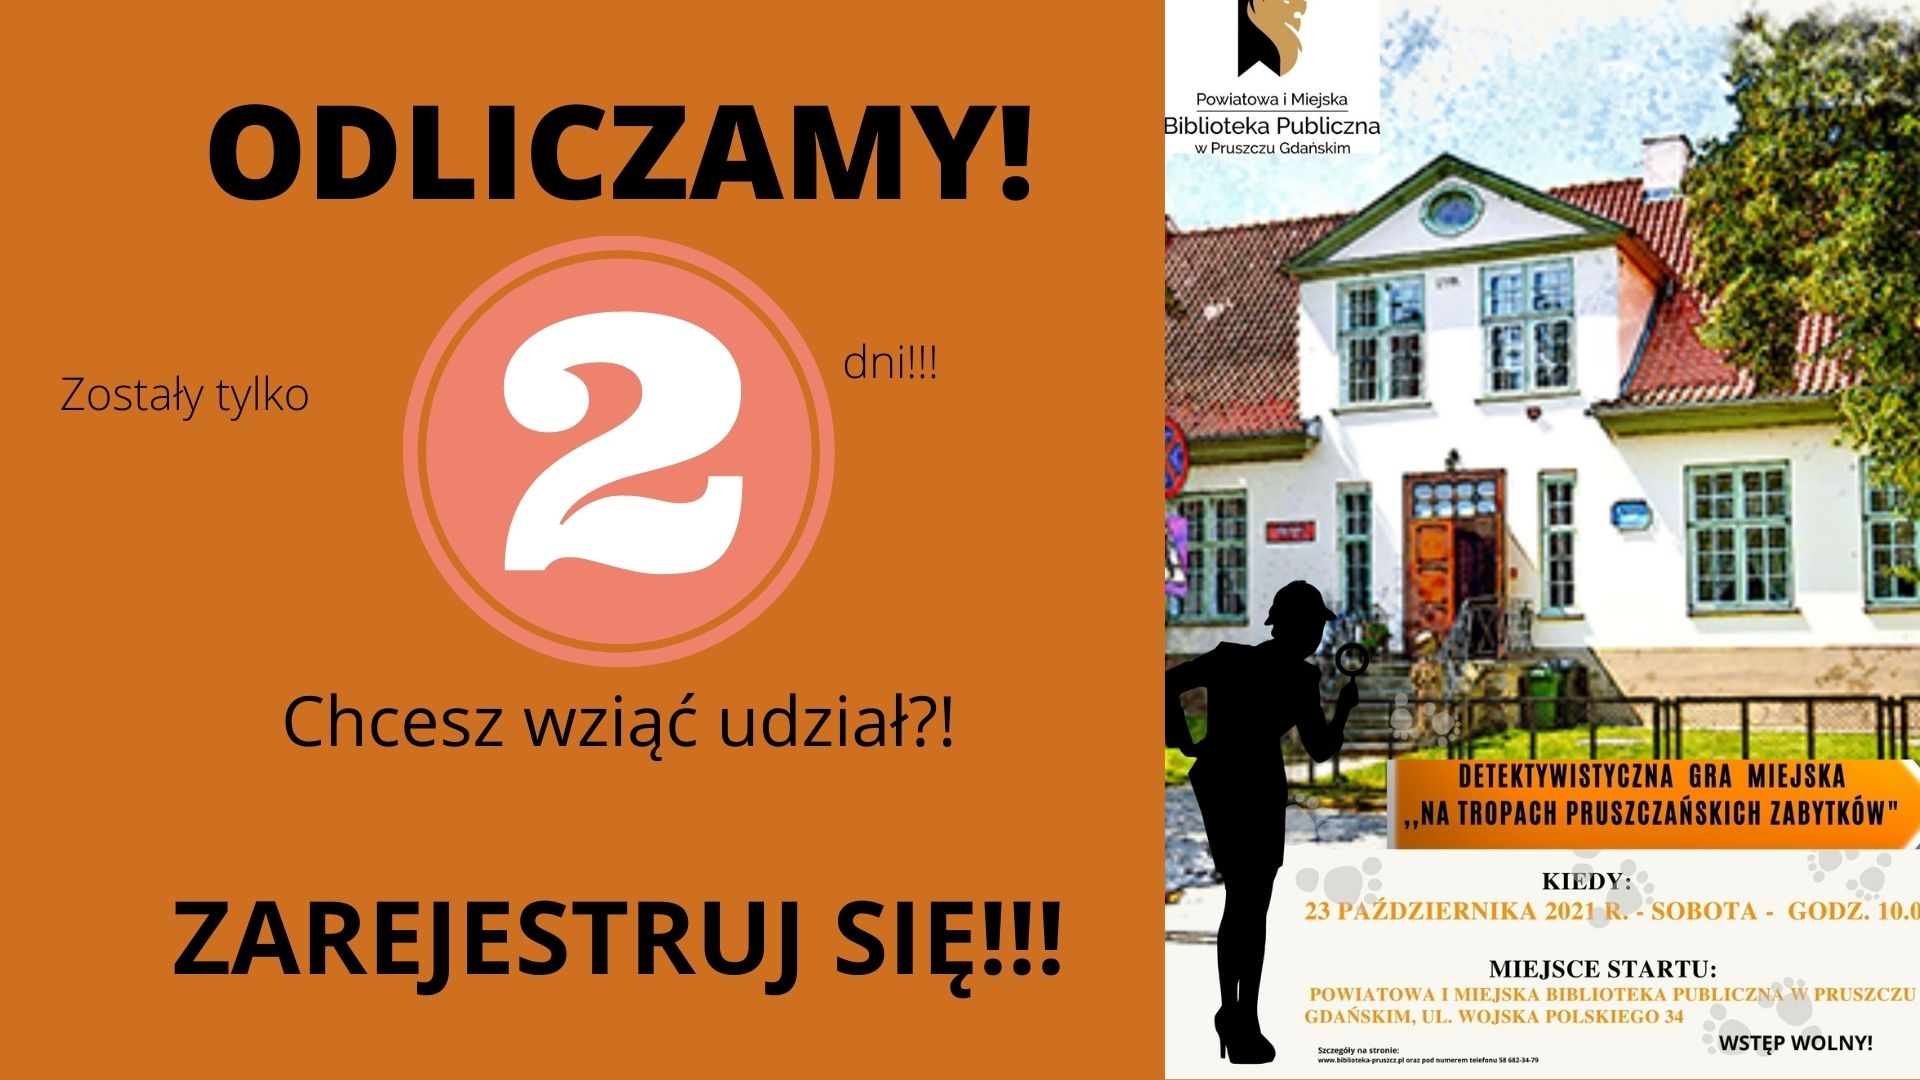 Powiatowa i Miejska Biblioteka Publiczna w Pruszczu Gdańskim; ODLICZAMY! Zostały tylko 2 dni!!! Chcesz wziąć udział?! ZAREJESTRUJ SIĘ!!!